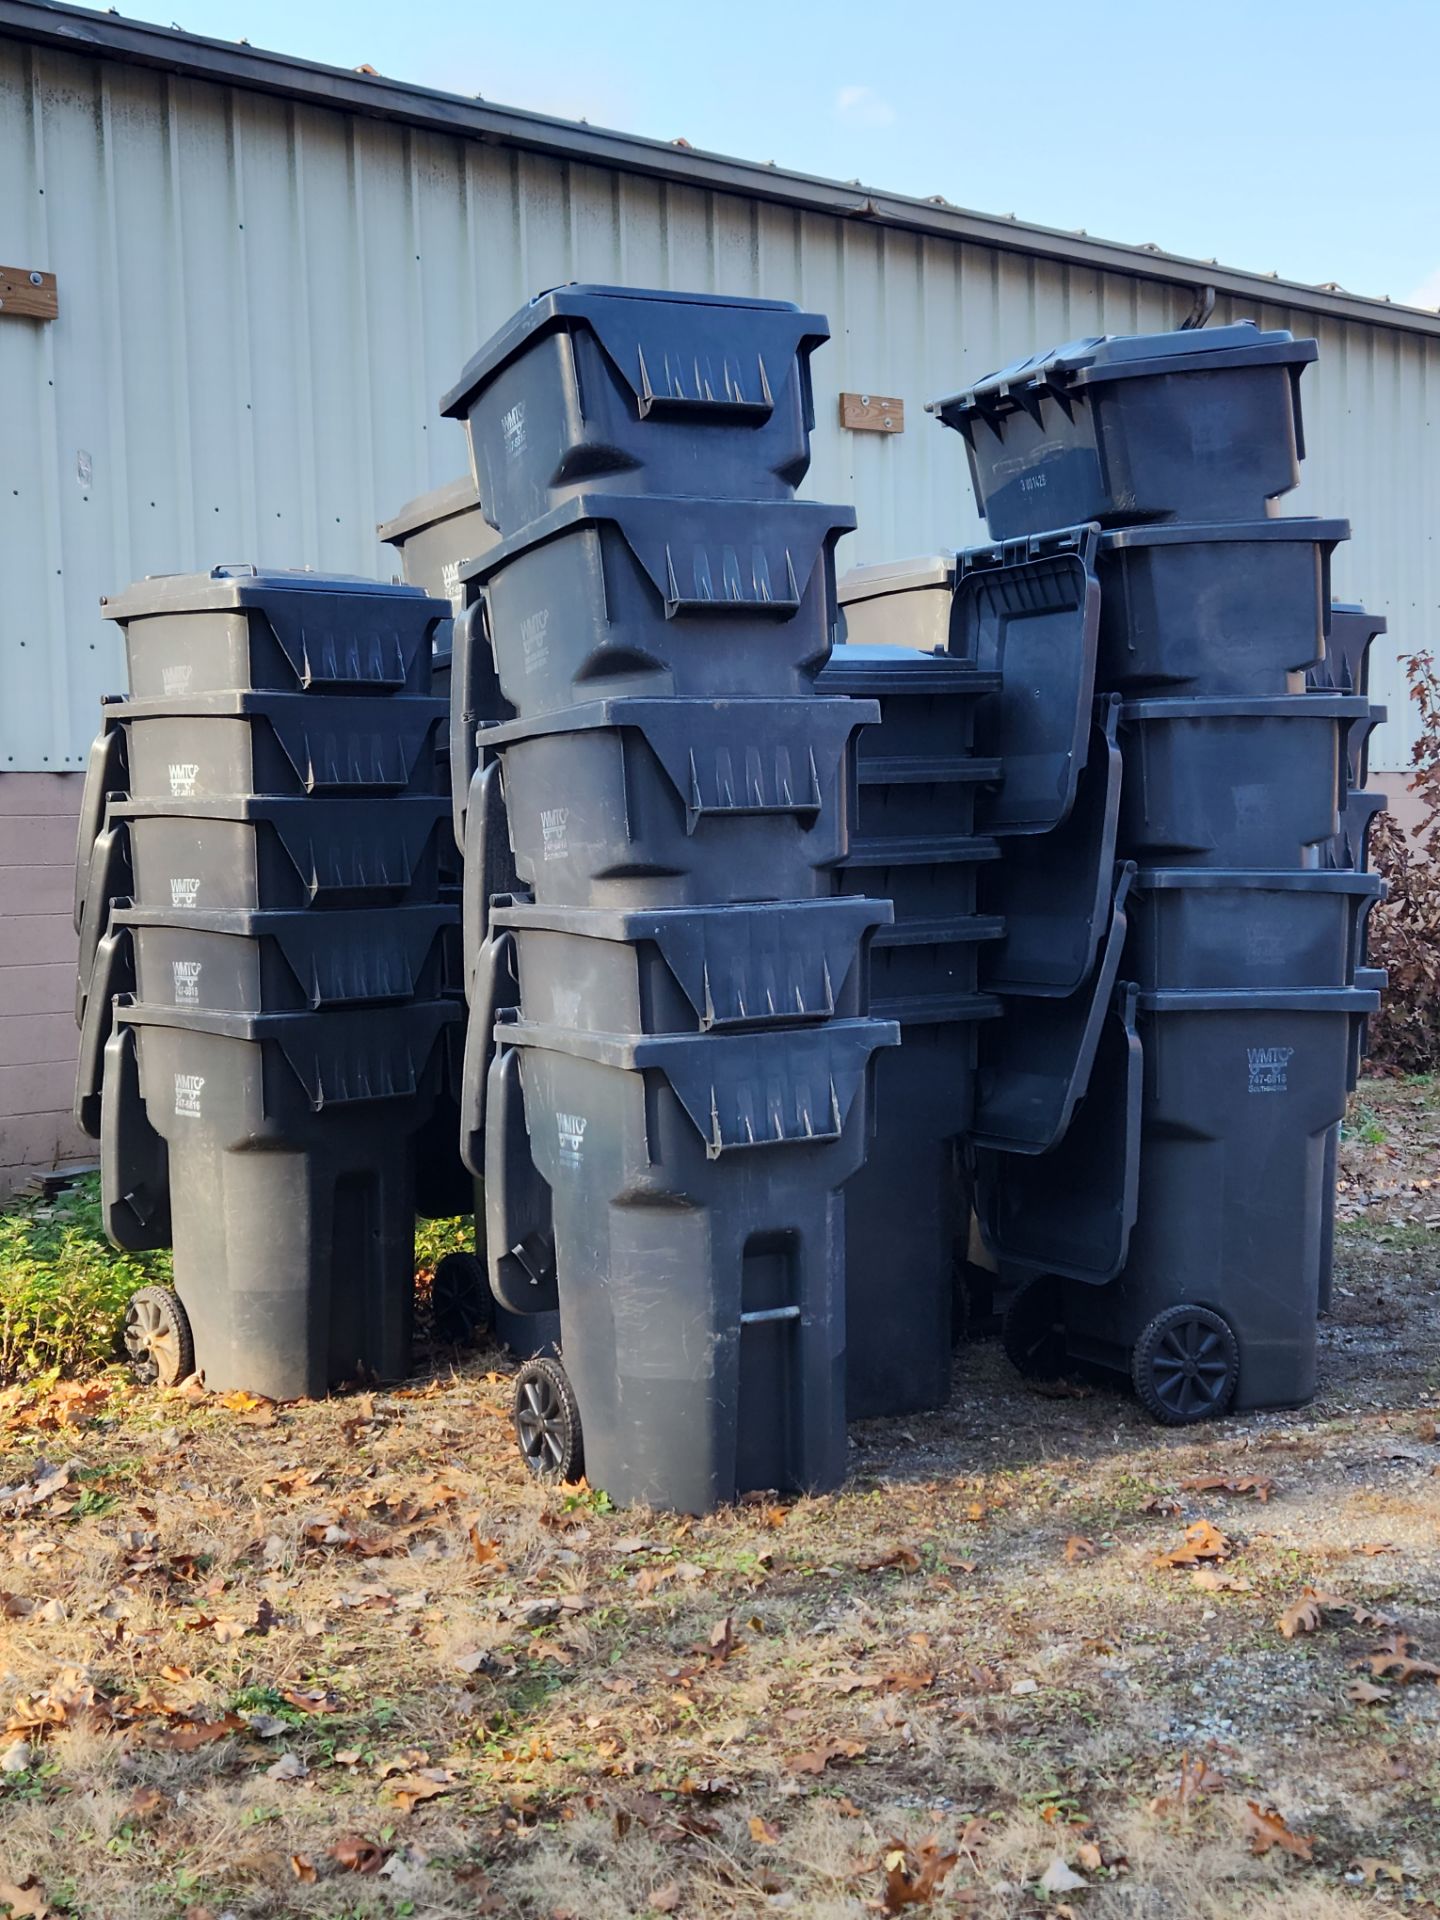 Dumpster Barrels - Image 3 of 3